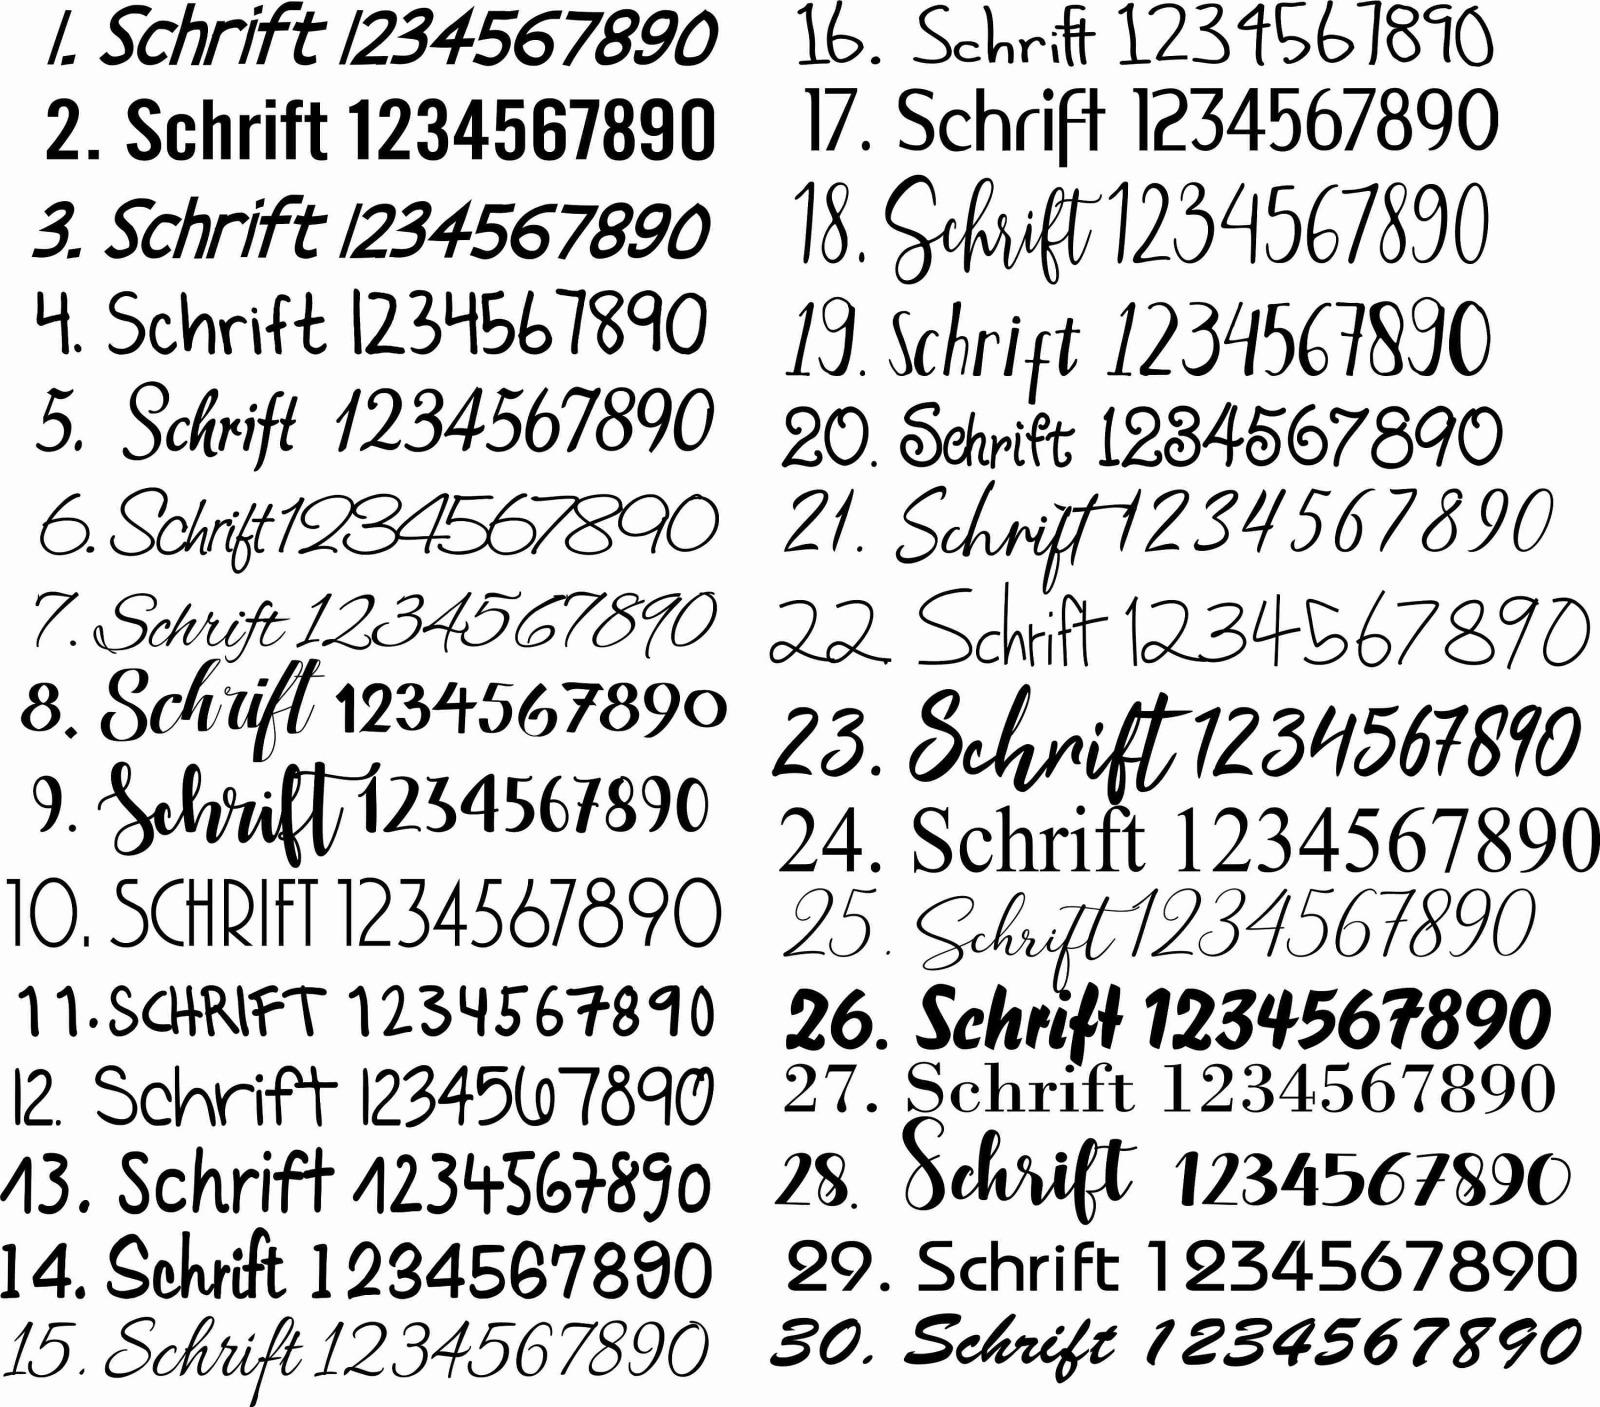 Schieferschild mit Vornamen und Nachnamen Figuren Haustürschild Schieferschild Schiefertafel Schild 3